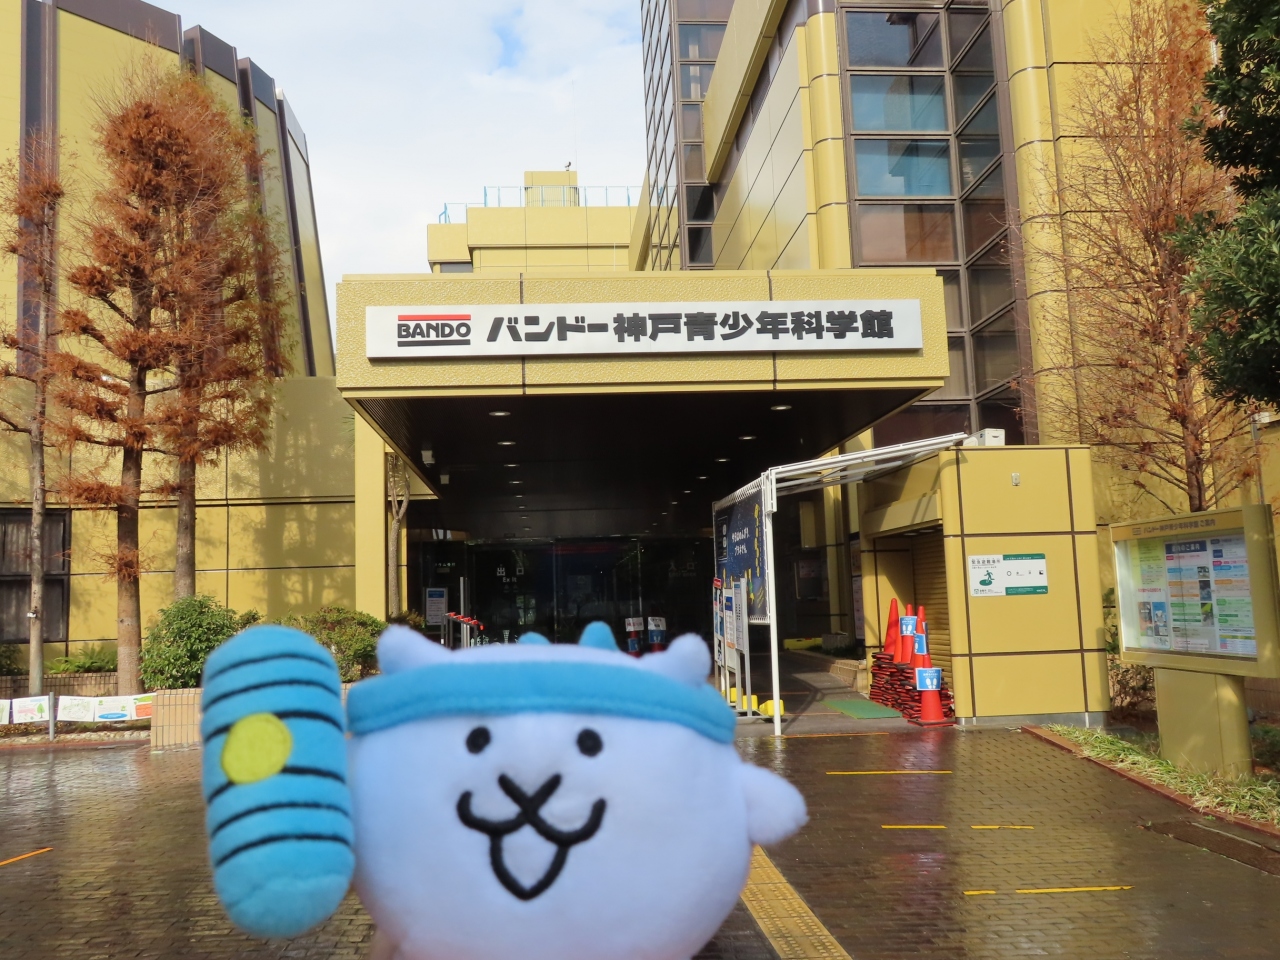 バンドー神戸青少年科学館 に行ってきたにゃ 神戸 兵庫県 の旅行記 ブログ By 旅にゃんこさん フォートラベル